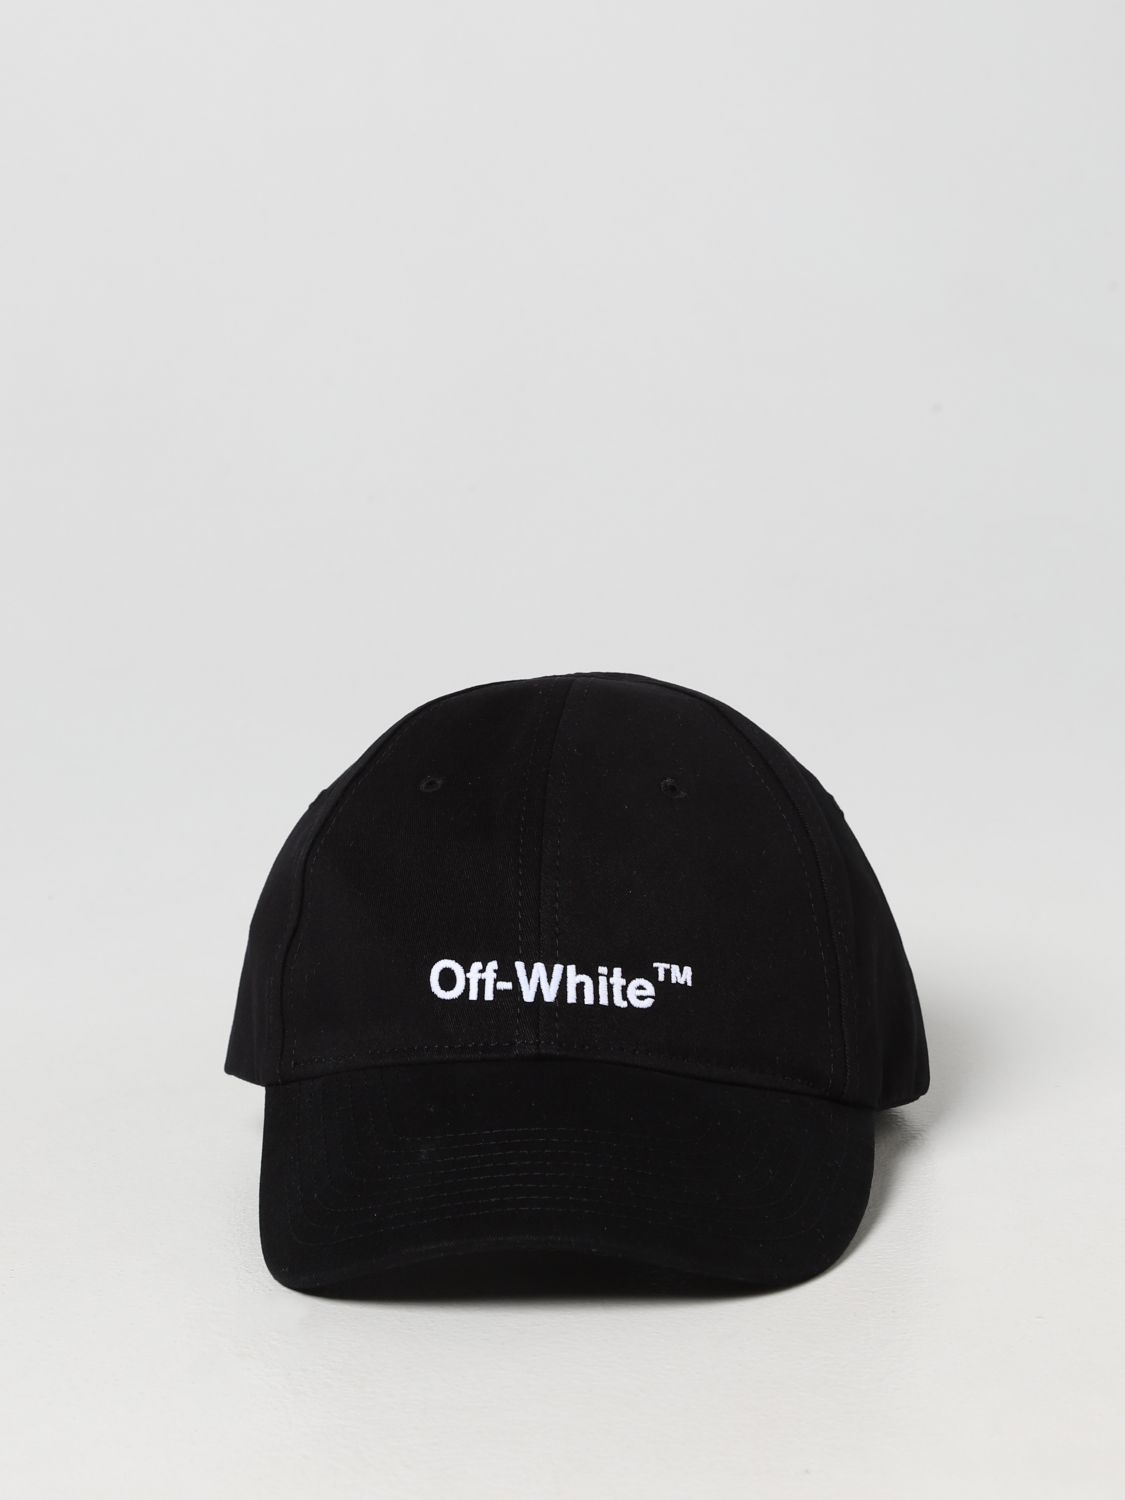 Hat Off-White: Off-White hat for men black 2